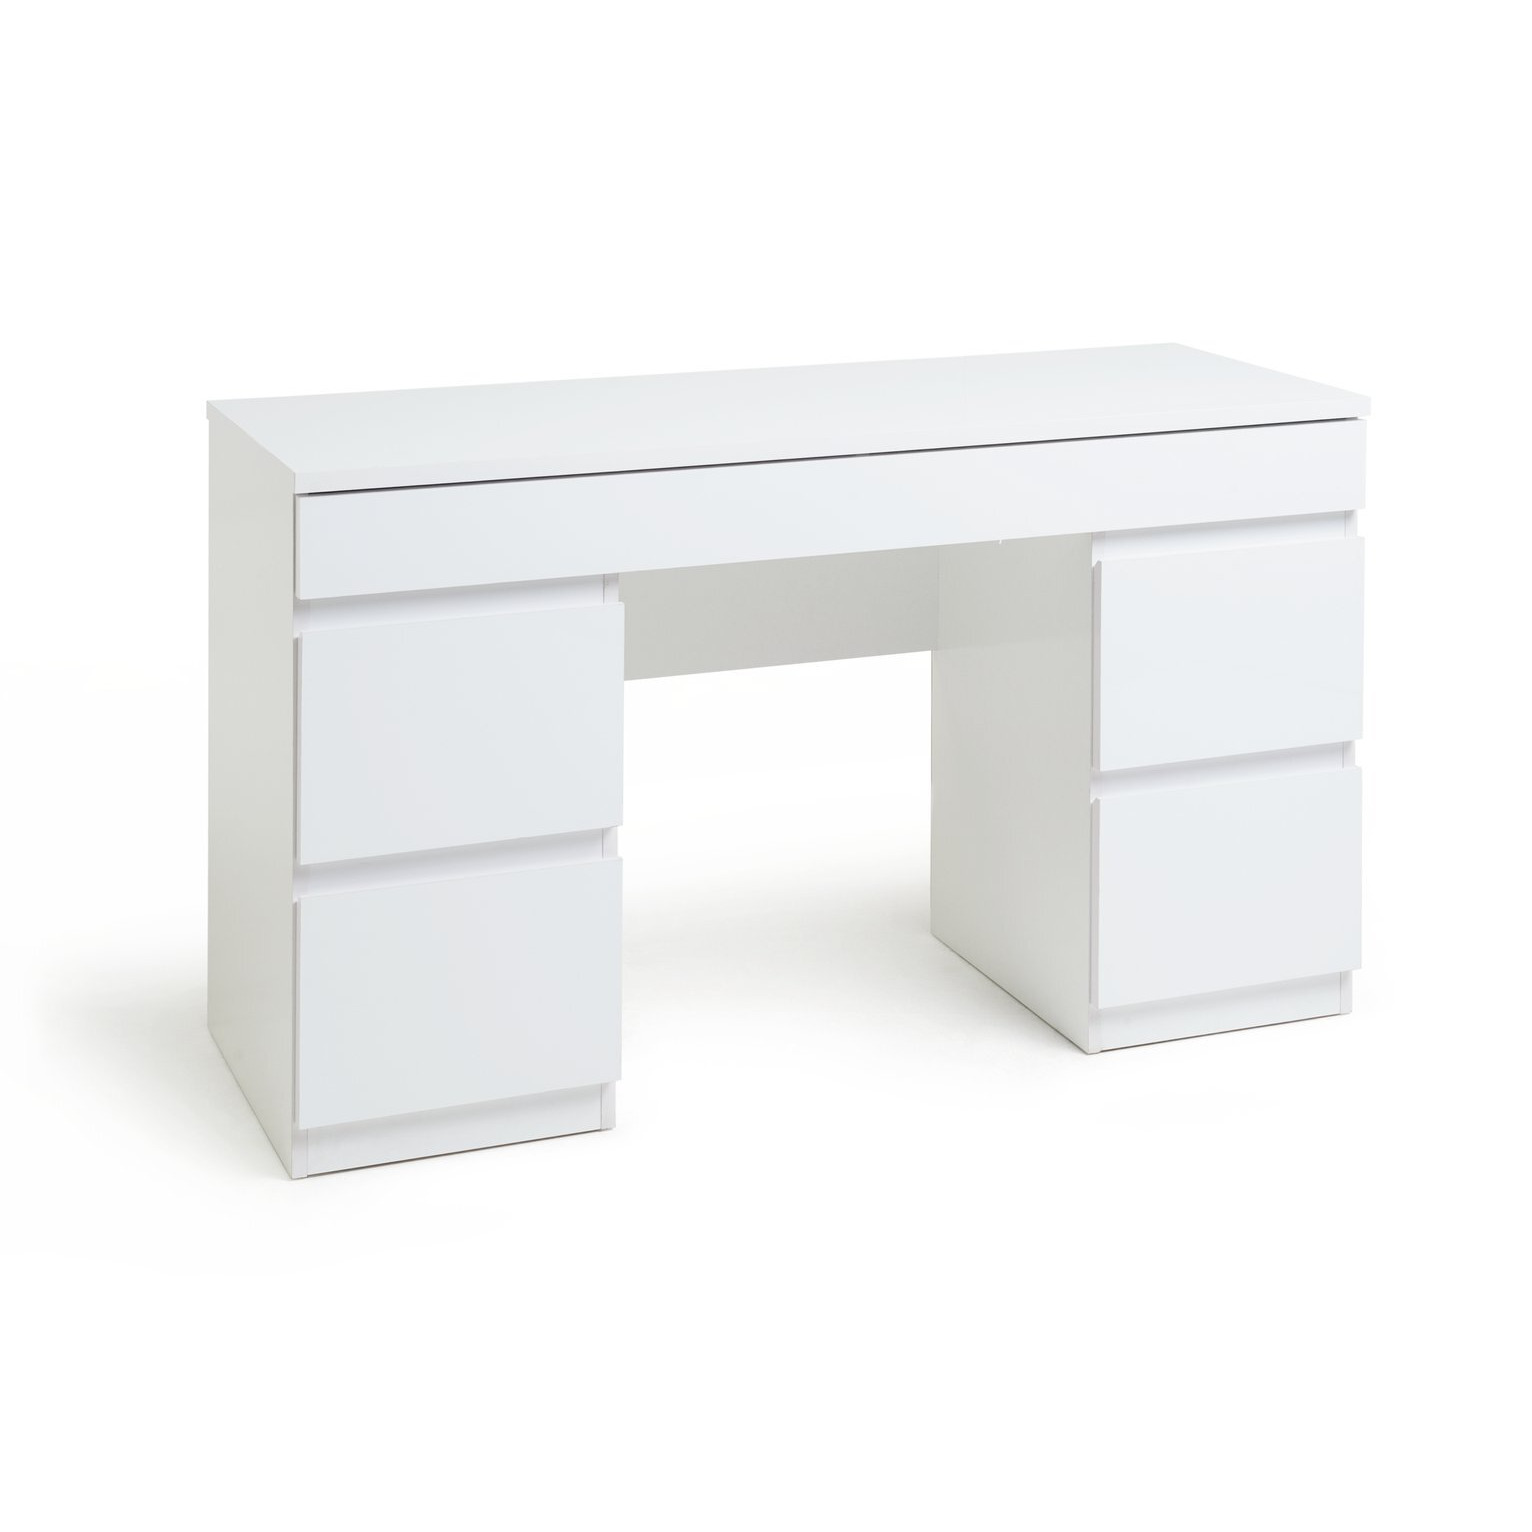 Habitat Jenson 6 Drawer Dressing Table Desk - White Gloss - image 1